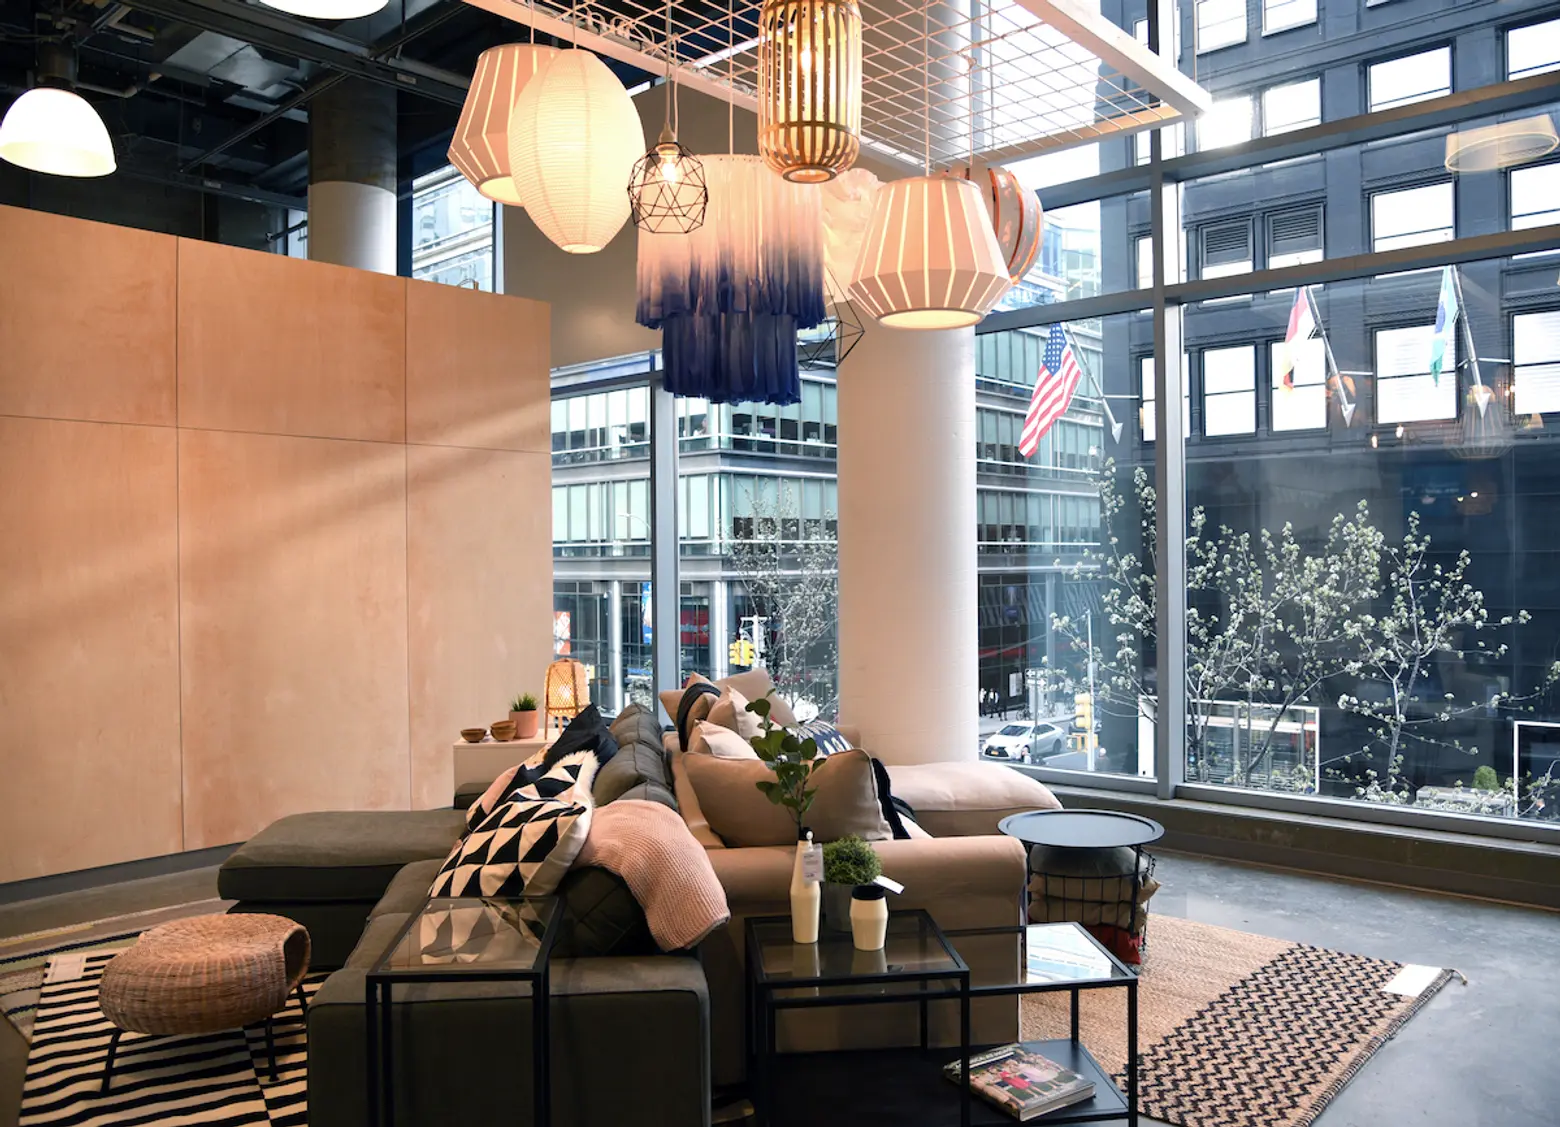 Take a peek inside the new Upper East Side IKEA